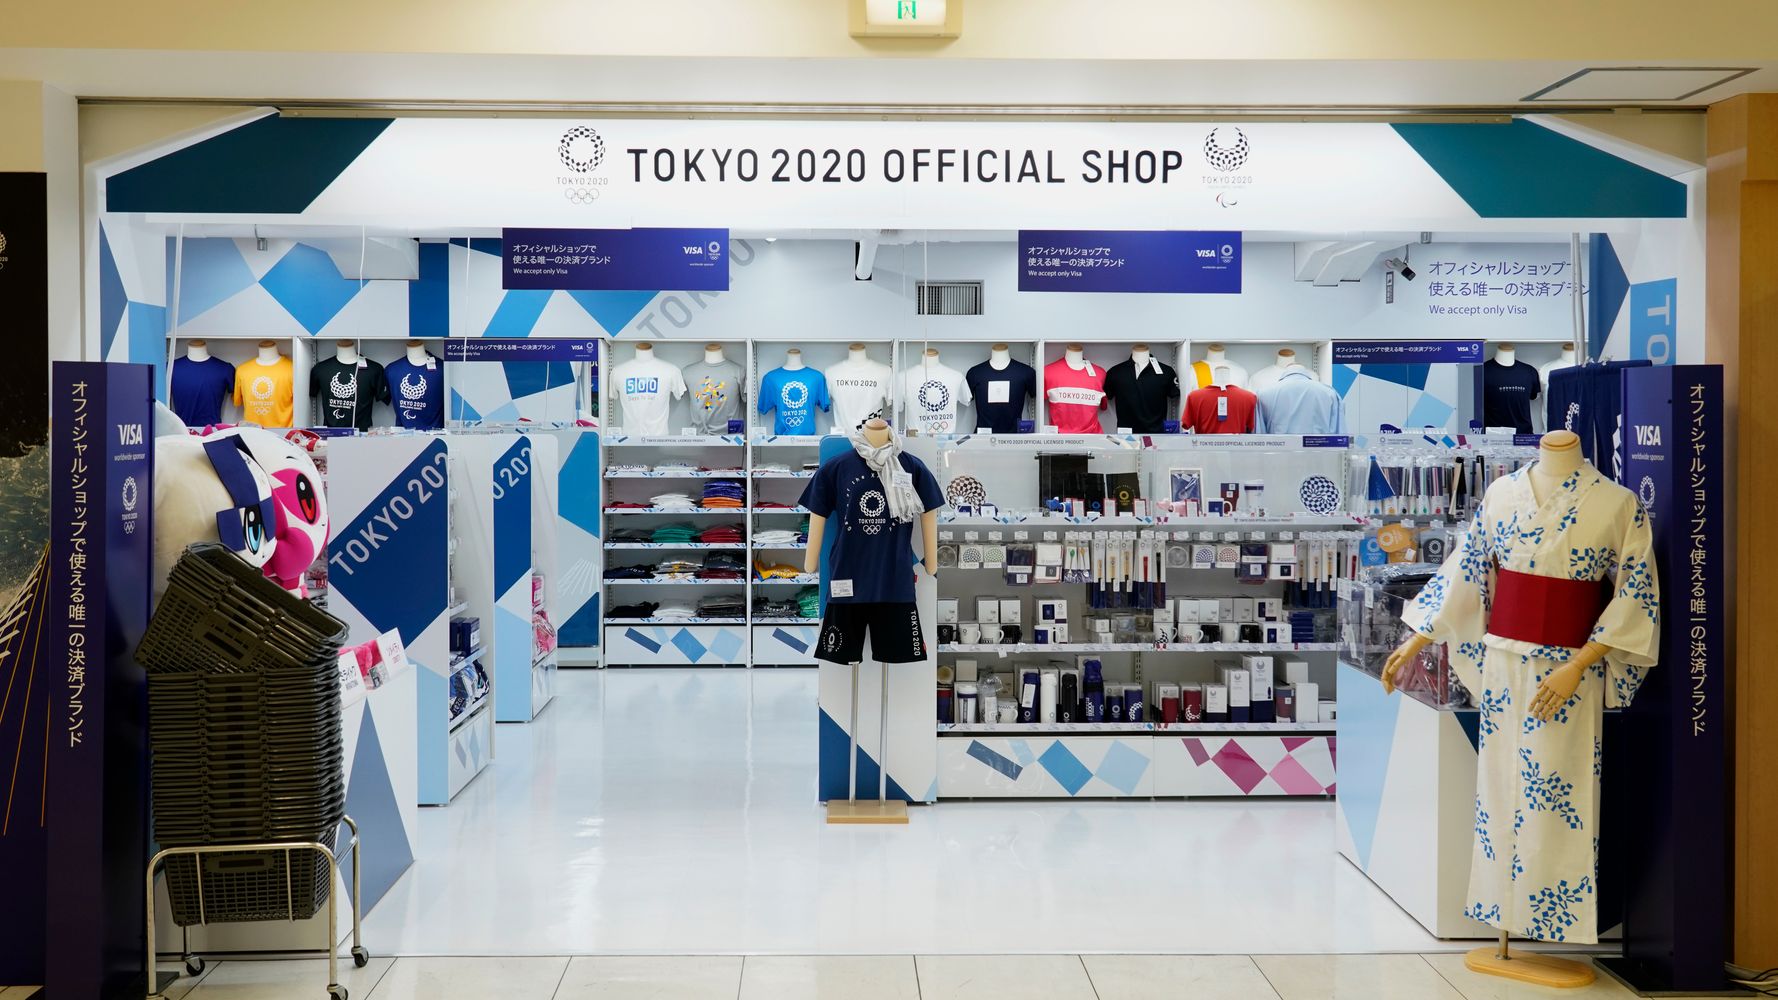 東京オリンピックまでもたなかったか と話題に 公式グッズ店 50店近く閉店 ハフポスト